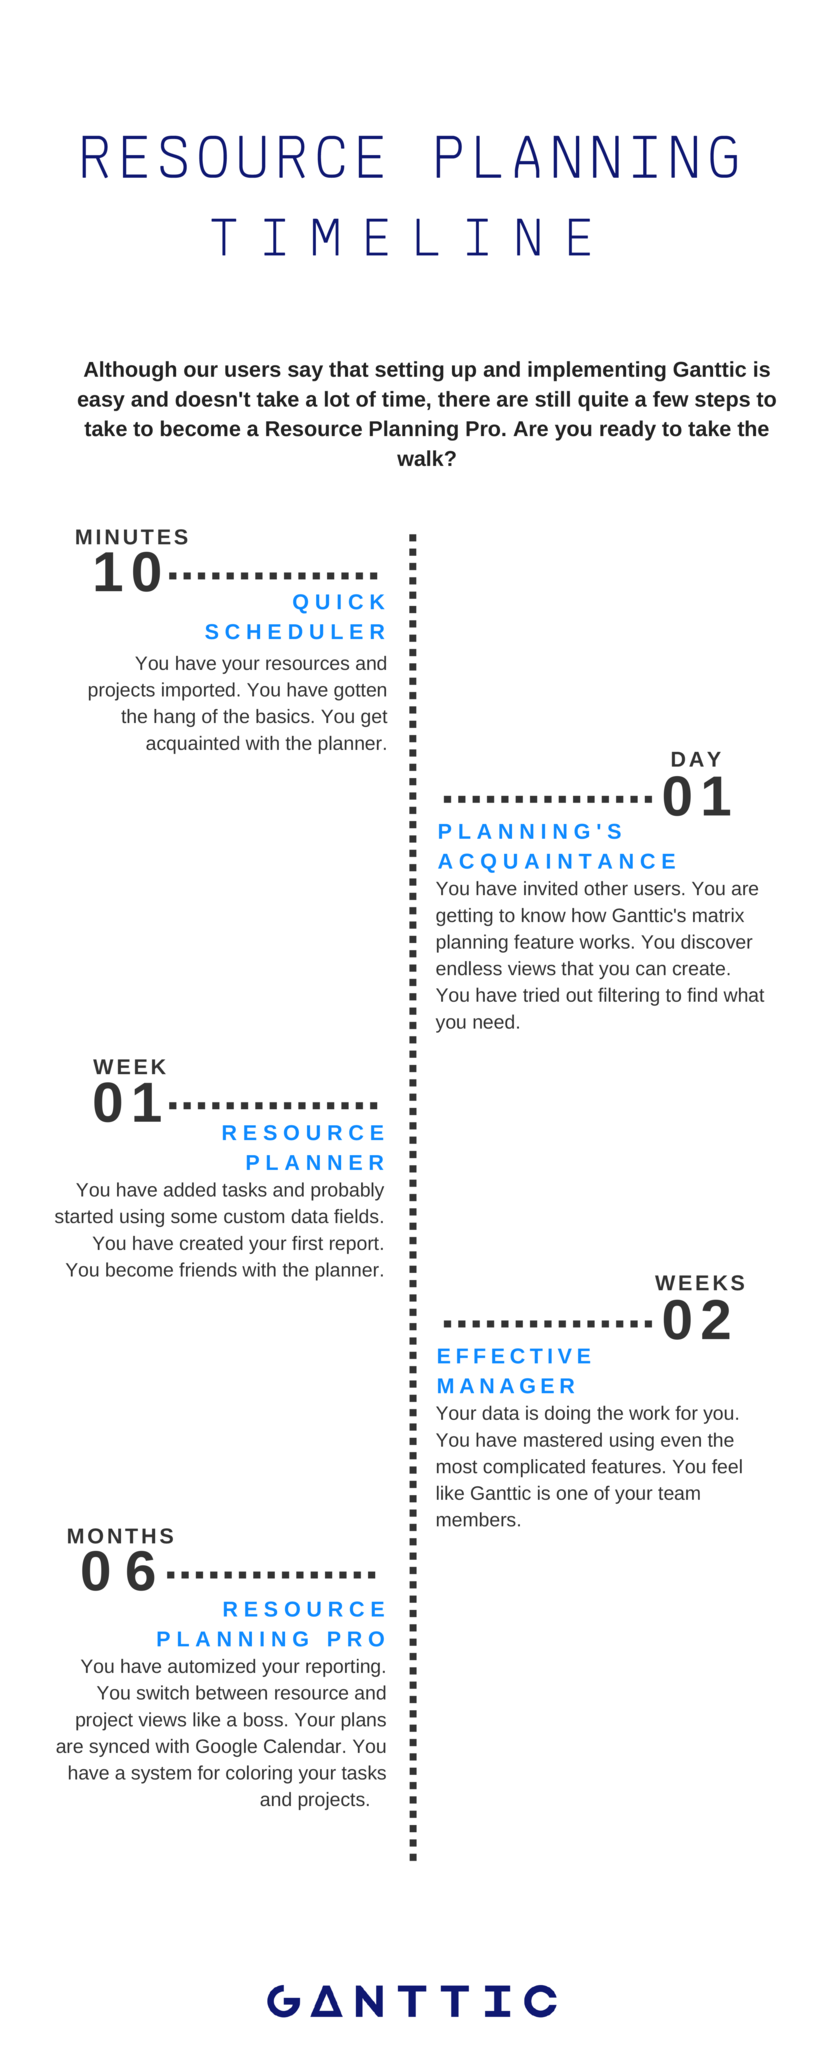 ganttic resource planning timeline